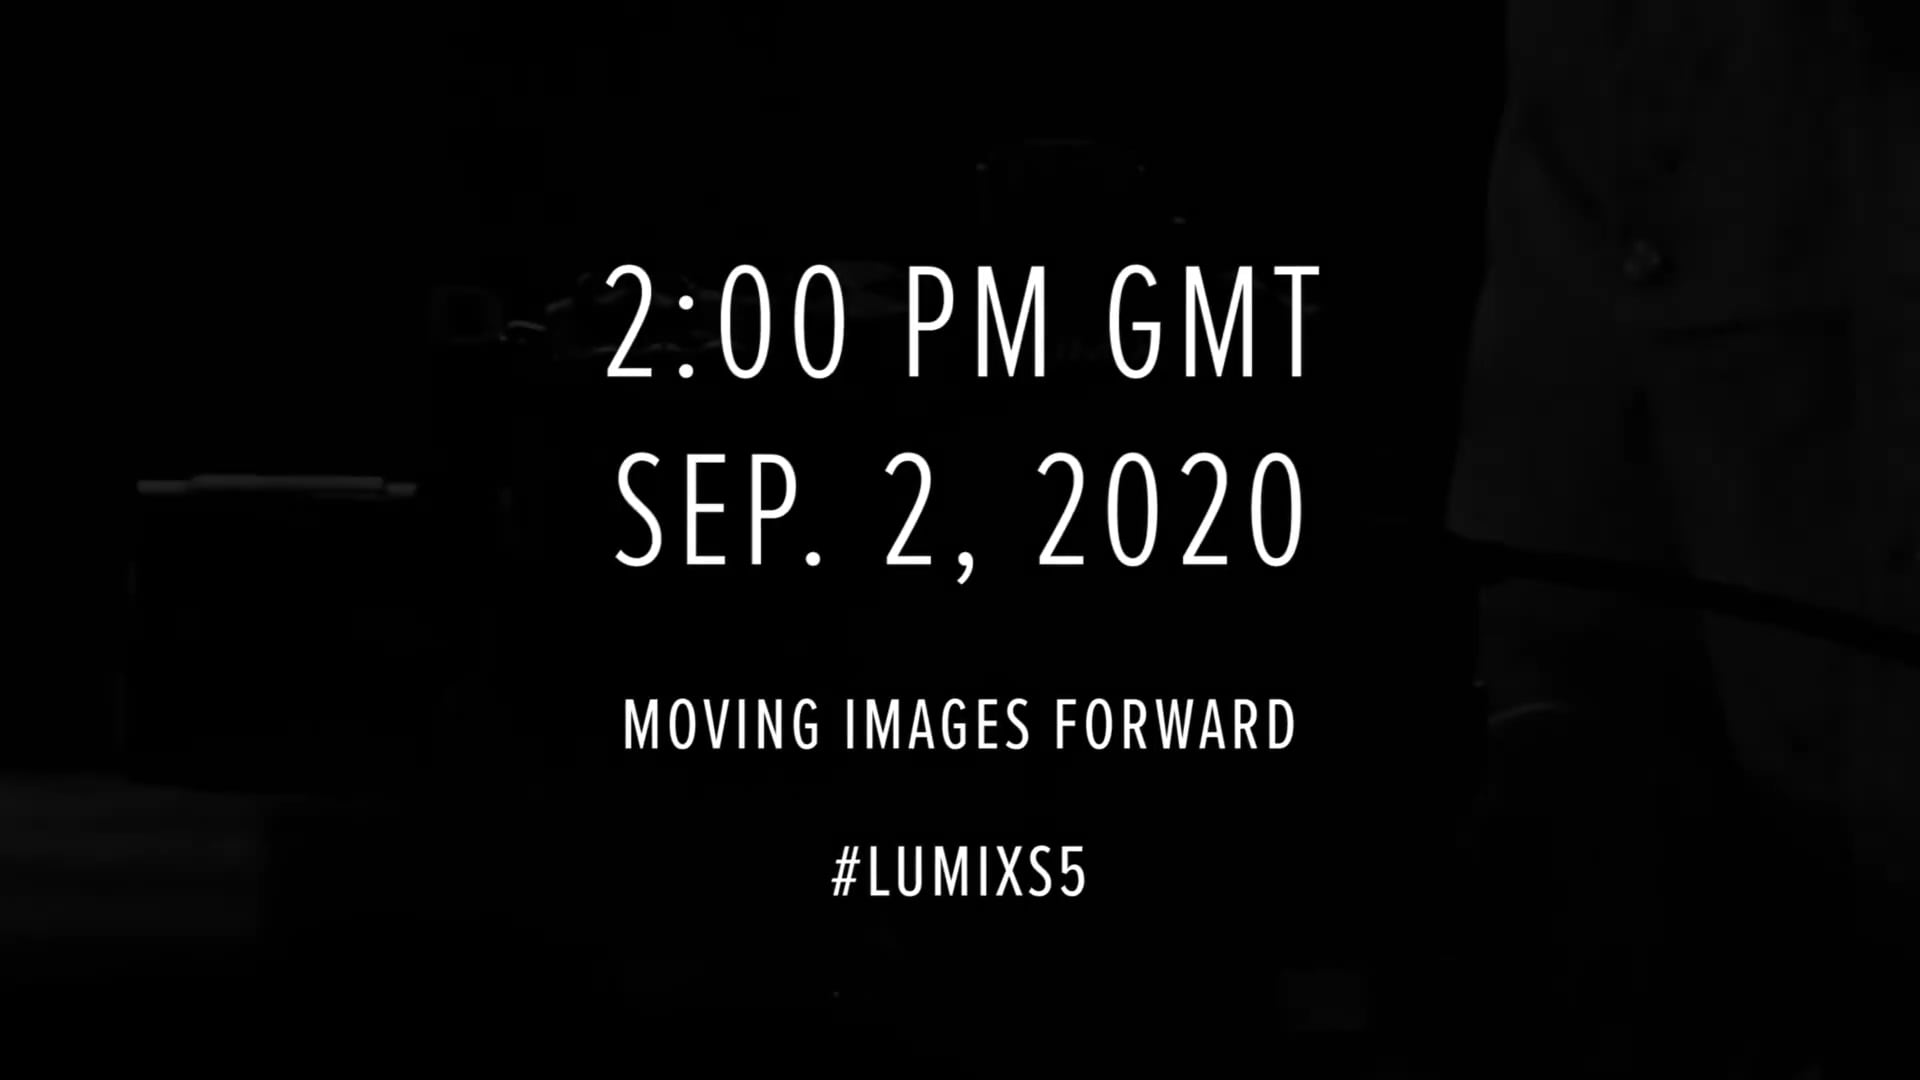 Panasonic giới thiệu teaser chính thức của Lumix S5 - 5